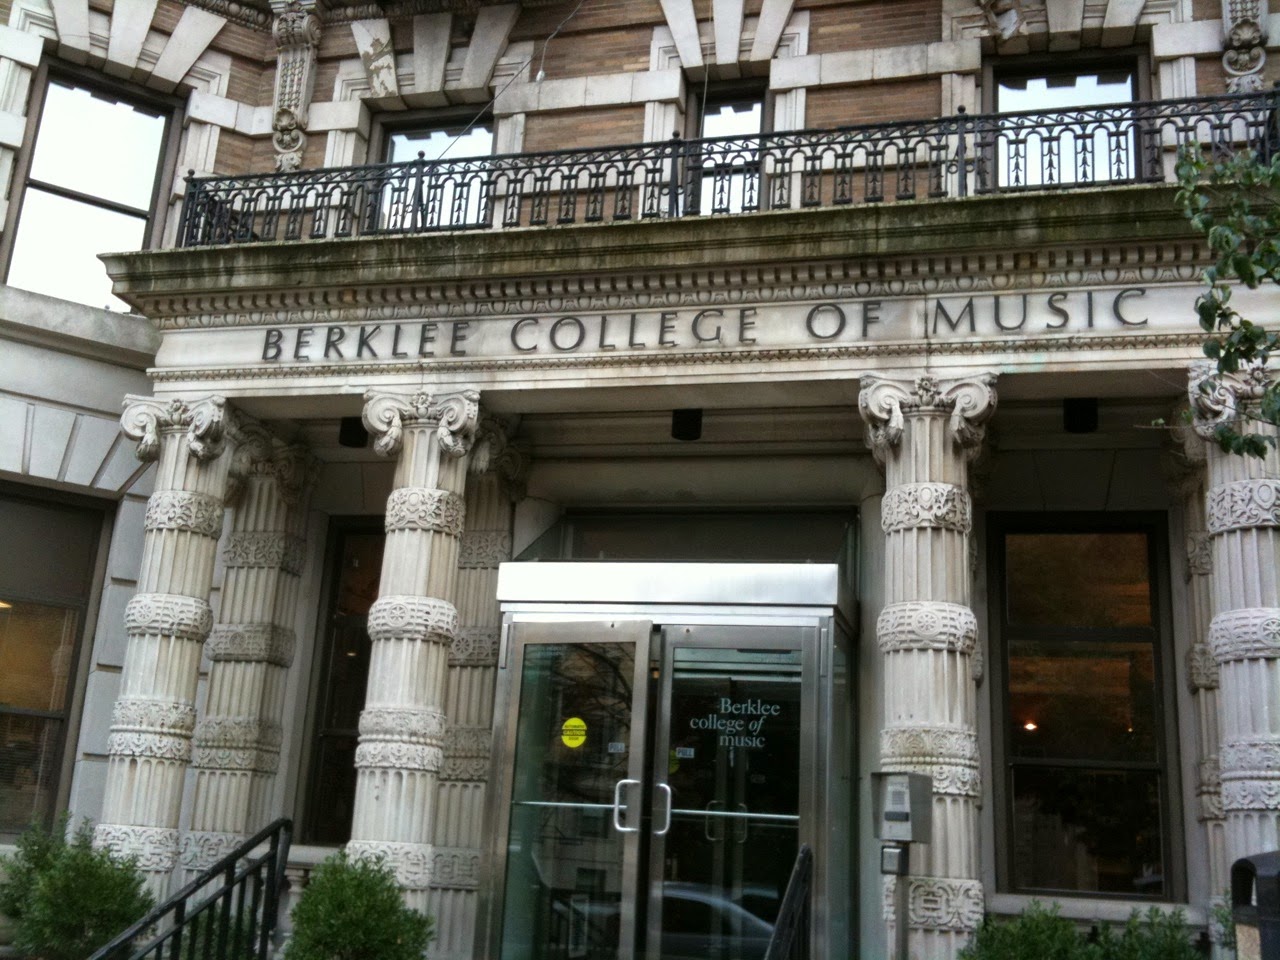 berklee college of music essay prompts